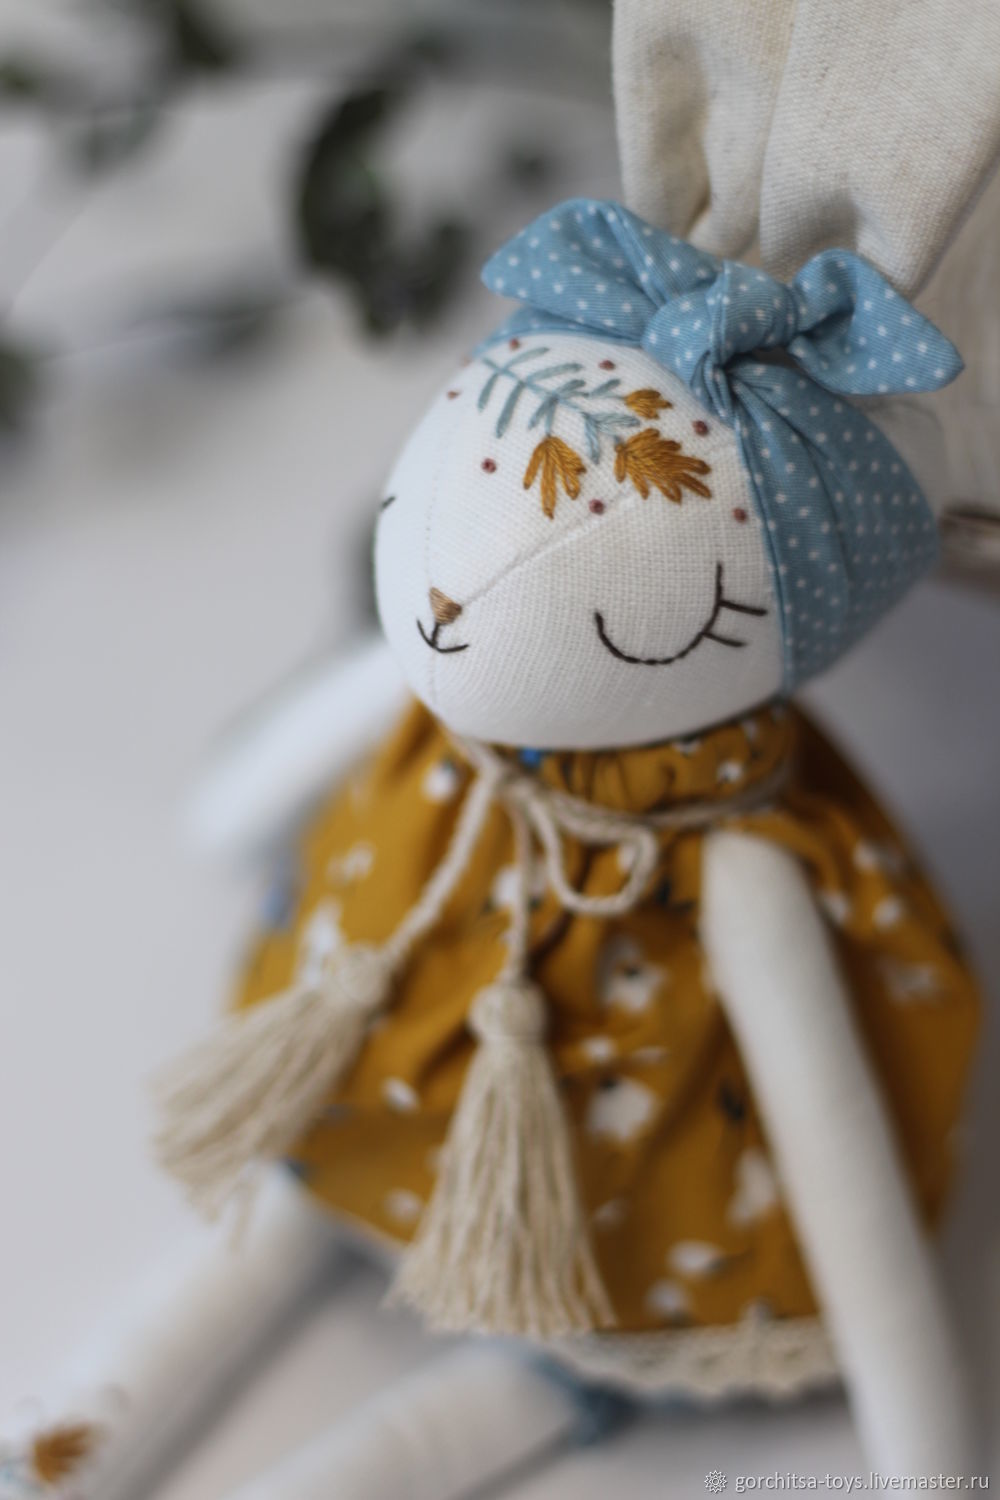  Зайчик белый с вышивкой в горчичном платье, Мягкие игрушки, Орел,  Фото №1